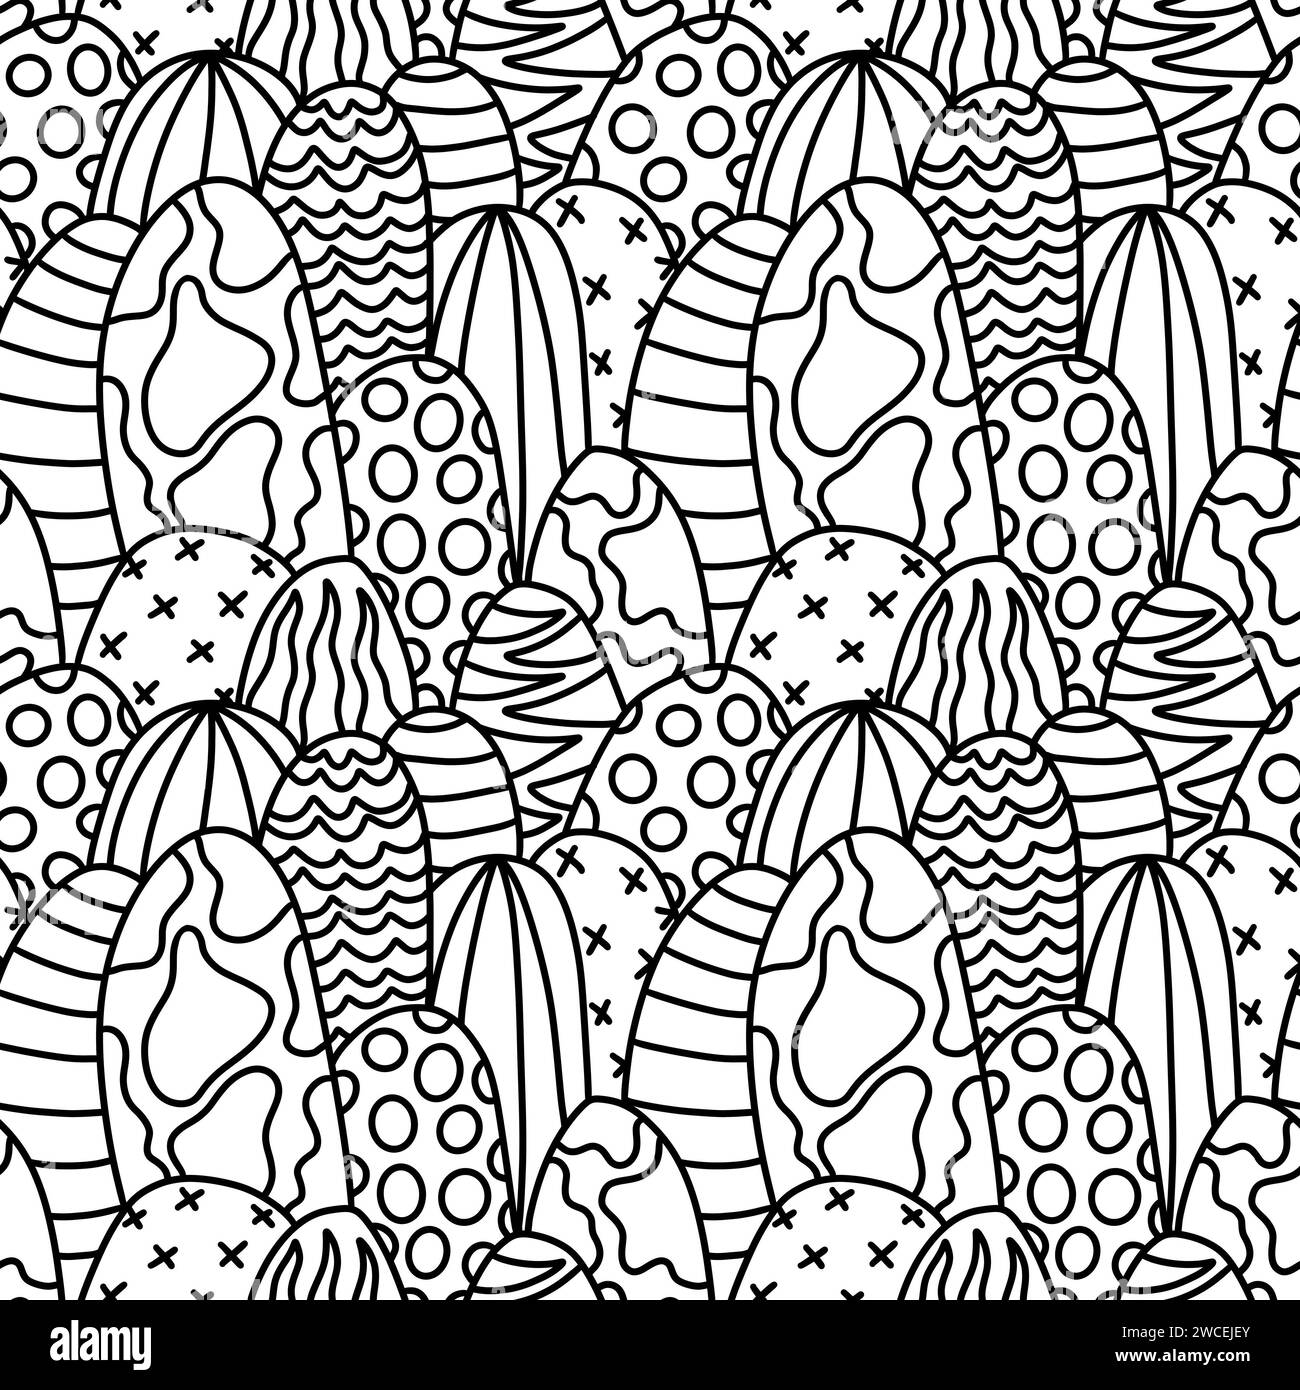 Huevos de Pascua Doodle patrón de cactus abstracto sin fisuras para telas y papel de envoltura y embalaje festivo Foto de stock